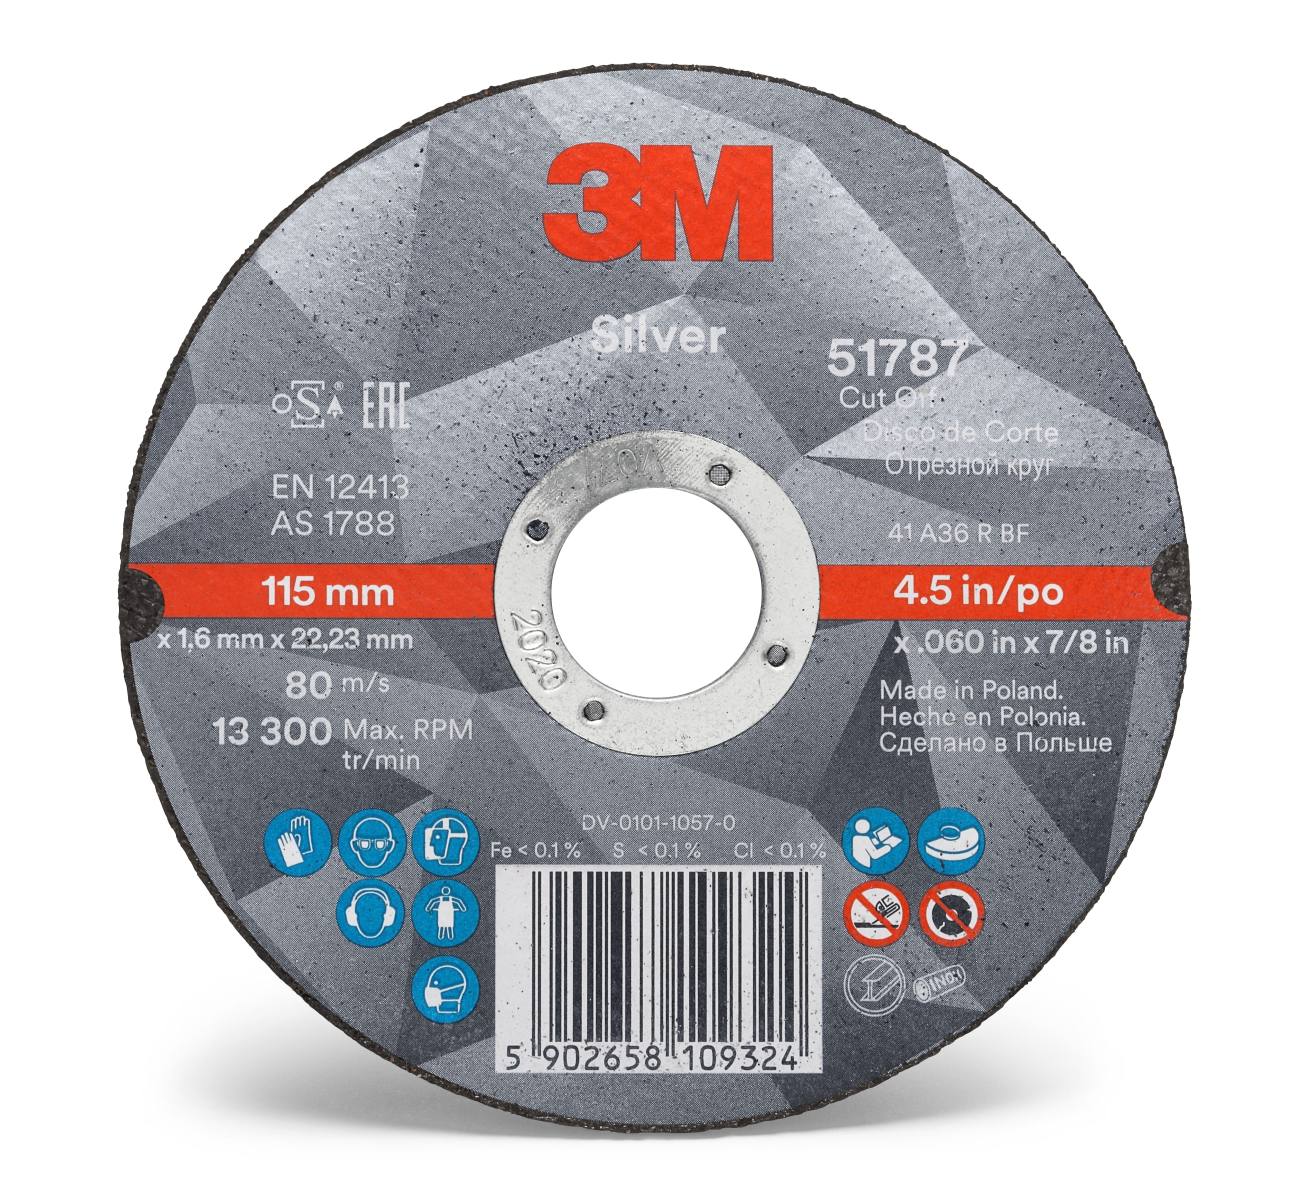 3M Silver Cut-Off Wheel Disque à tronçonner, 125 mm, 1,6 mm, 22,23 mm, T41, 51792